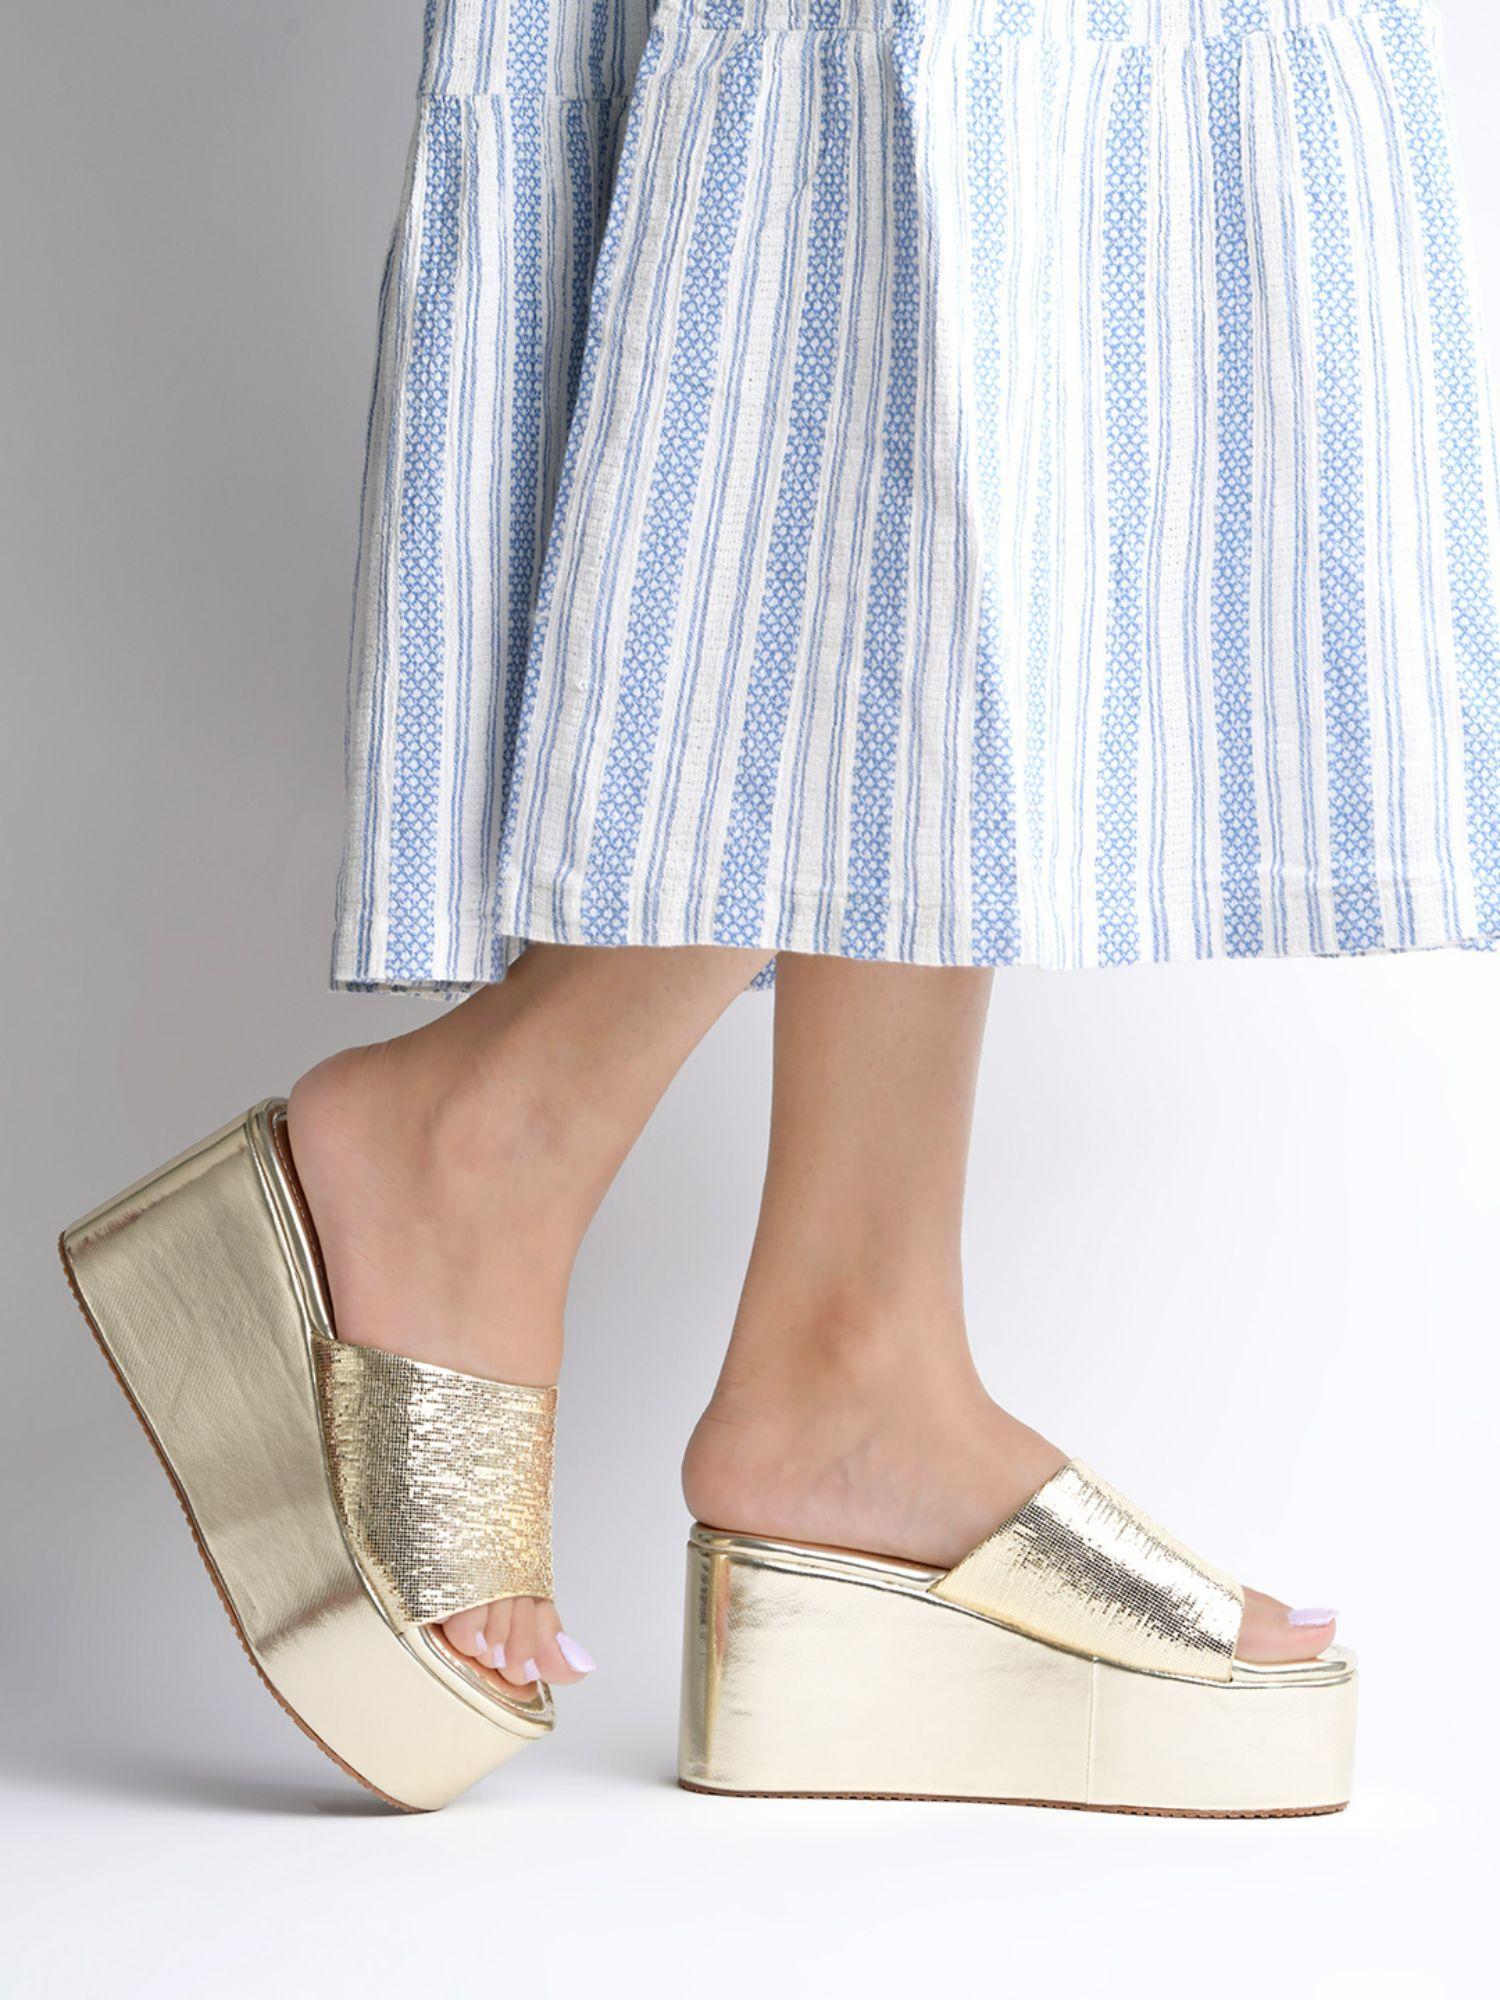 embellished-sequence-detailed-golden-wedge-heels